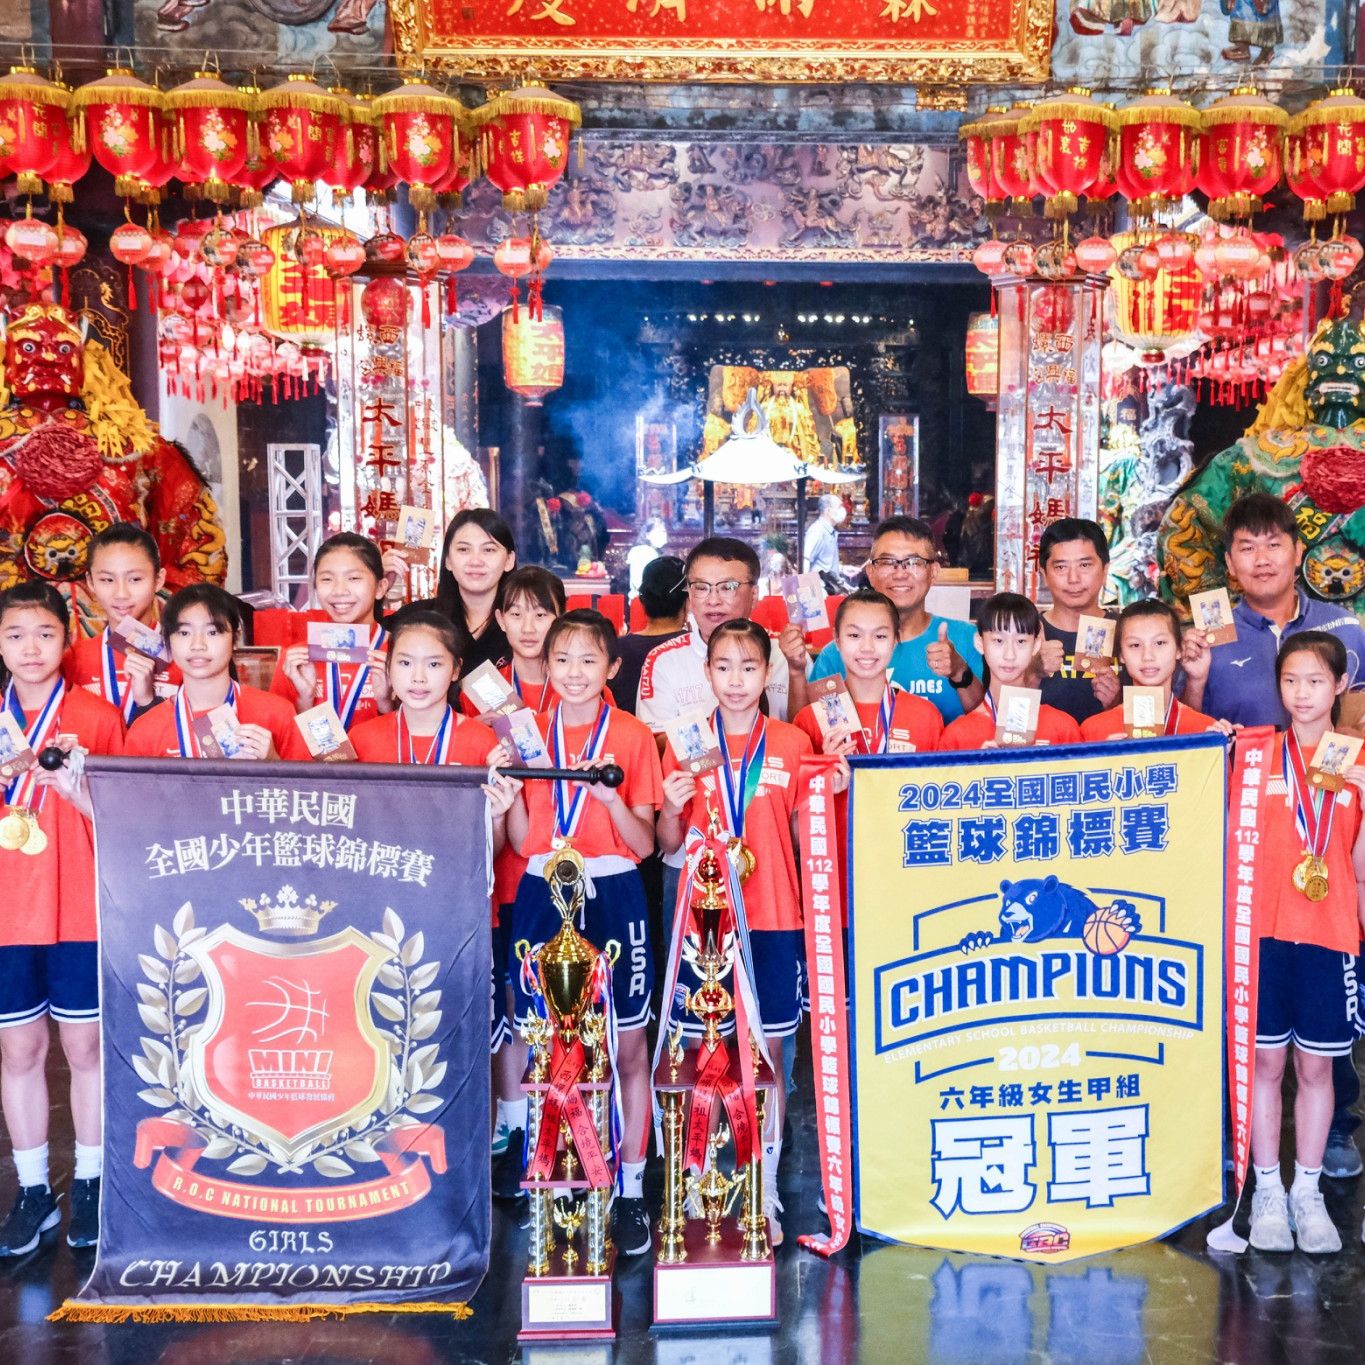 恭賀 斗六鎮南國小 全國國民小學籃球錦標賽冠軍